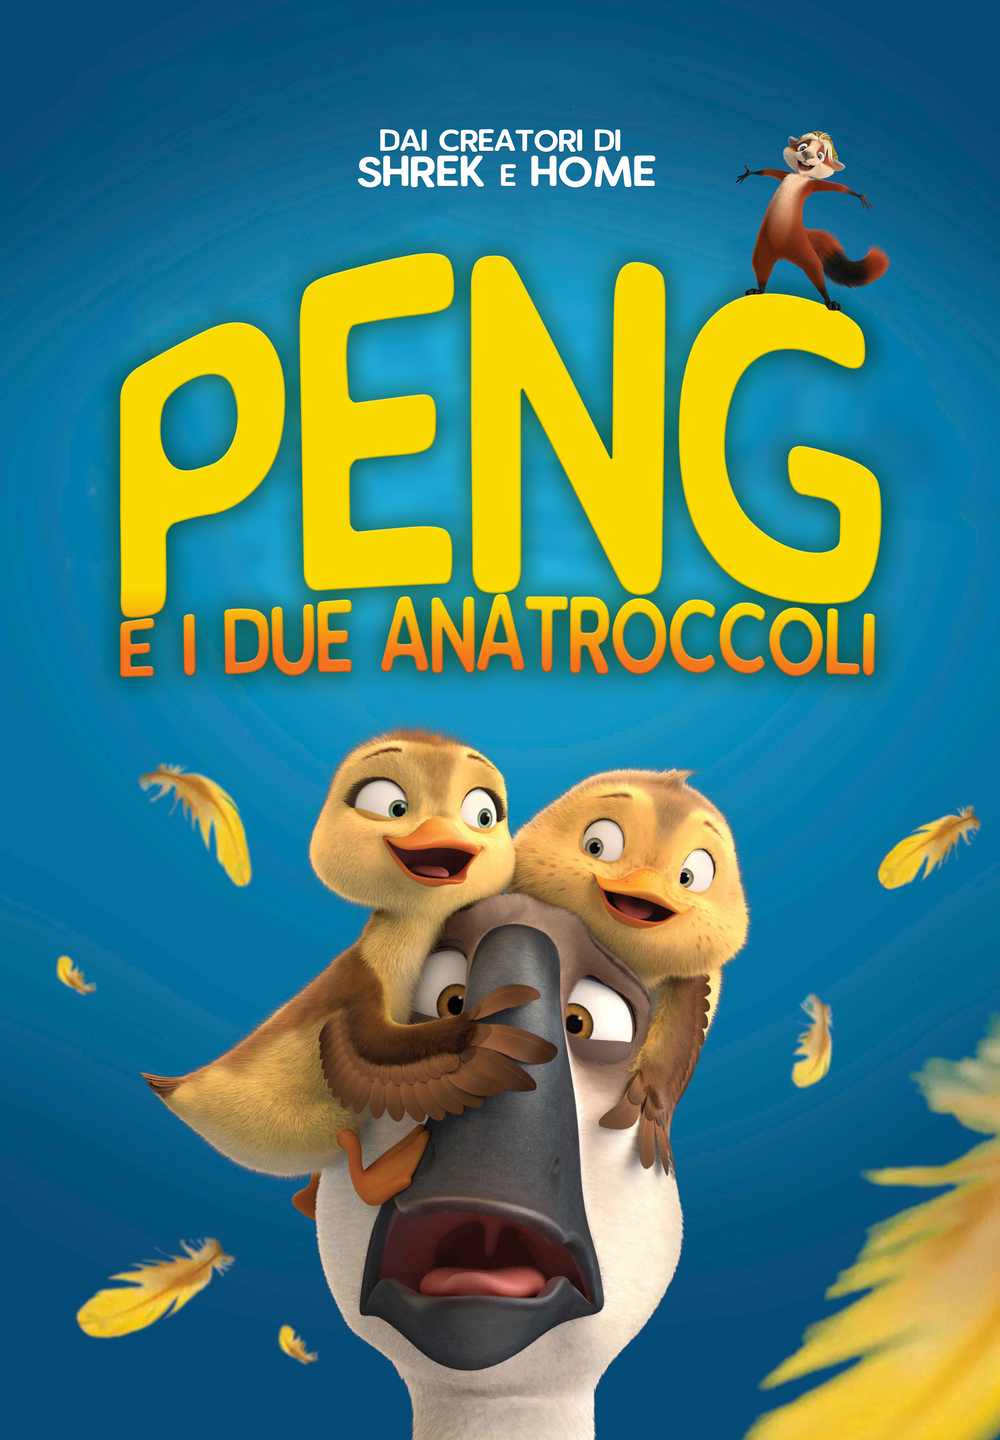 Peng e i due anatroccoli [HD] (2018)